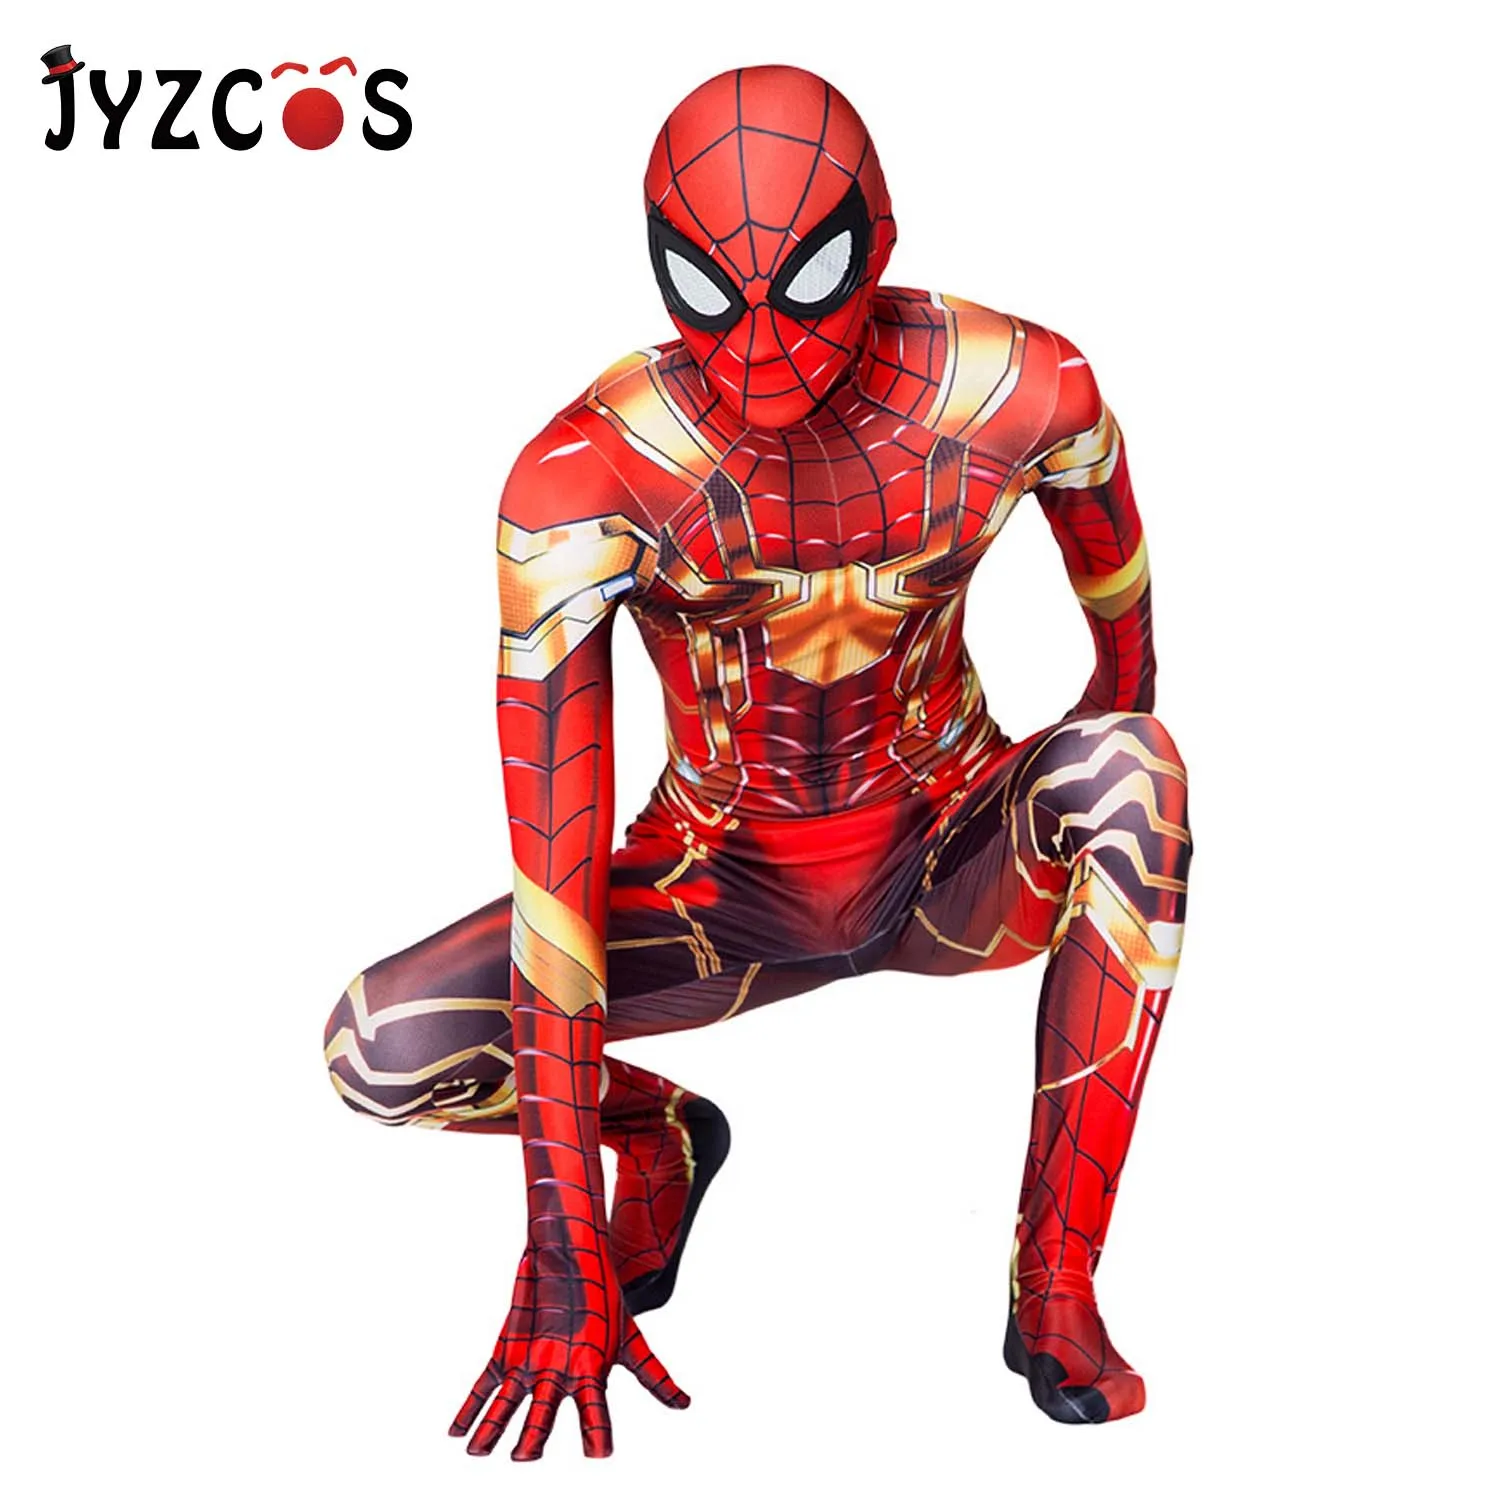 JYZCOS/ костюм «Железный Человек-паук» костюм «Человек-паук» мужские костюмы для Хэллоуина «Человек-паук» Одежда для костюмированной вечеринки для взрослых и детей постарше